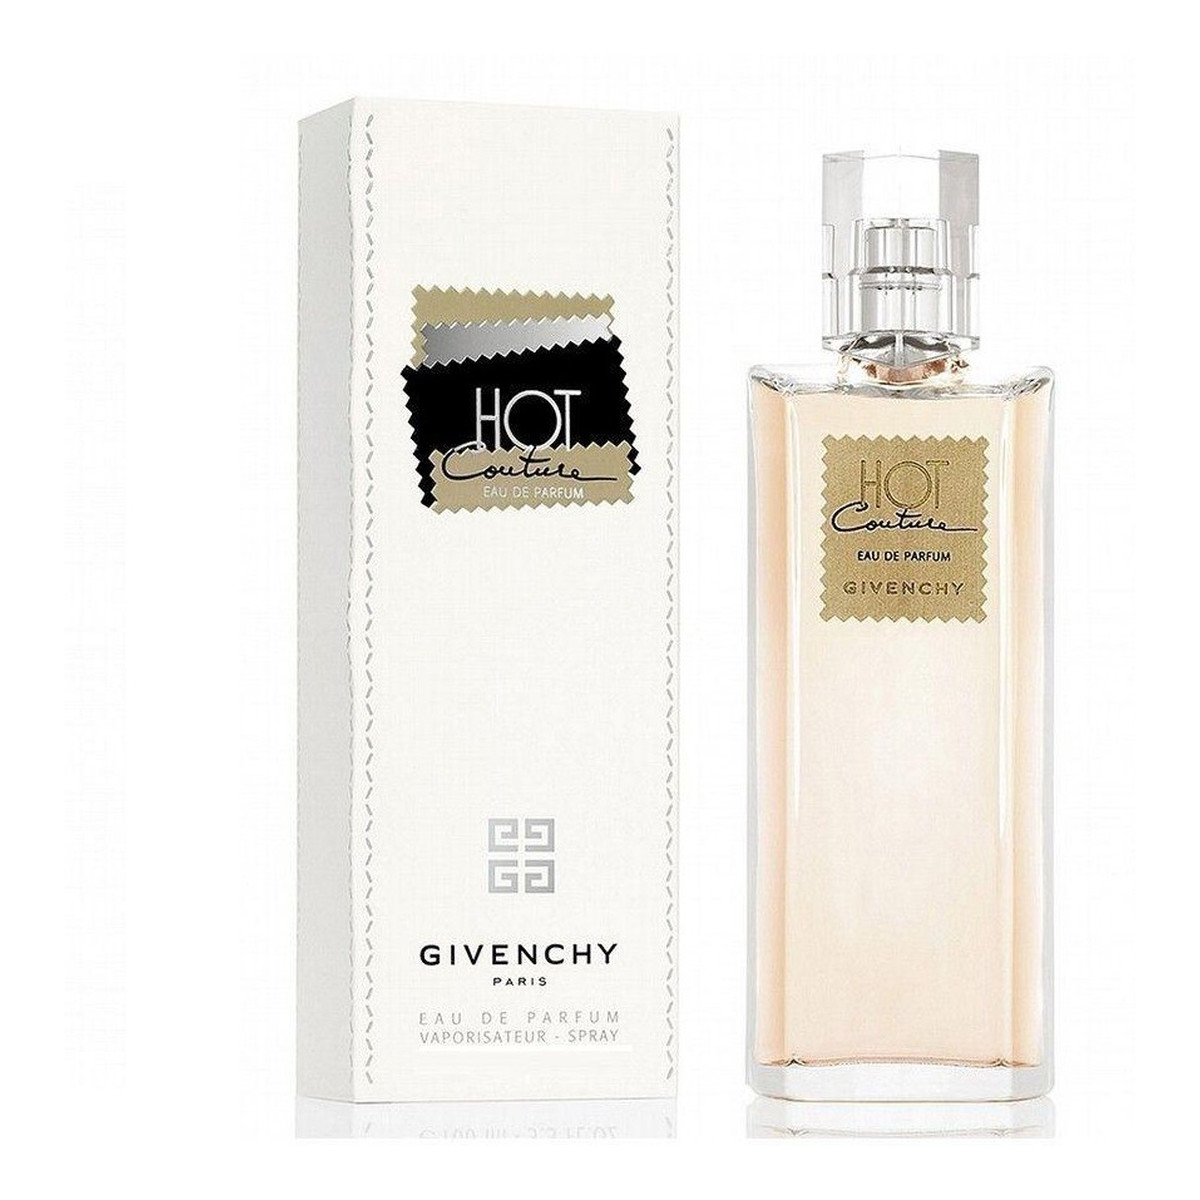 Givenchy Hot Couture Woda perfumowana spray 50ml